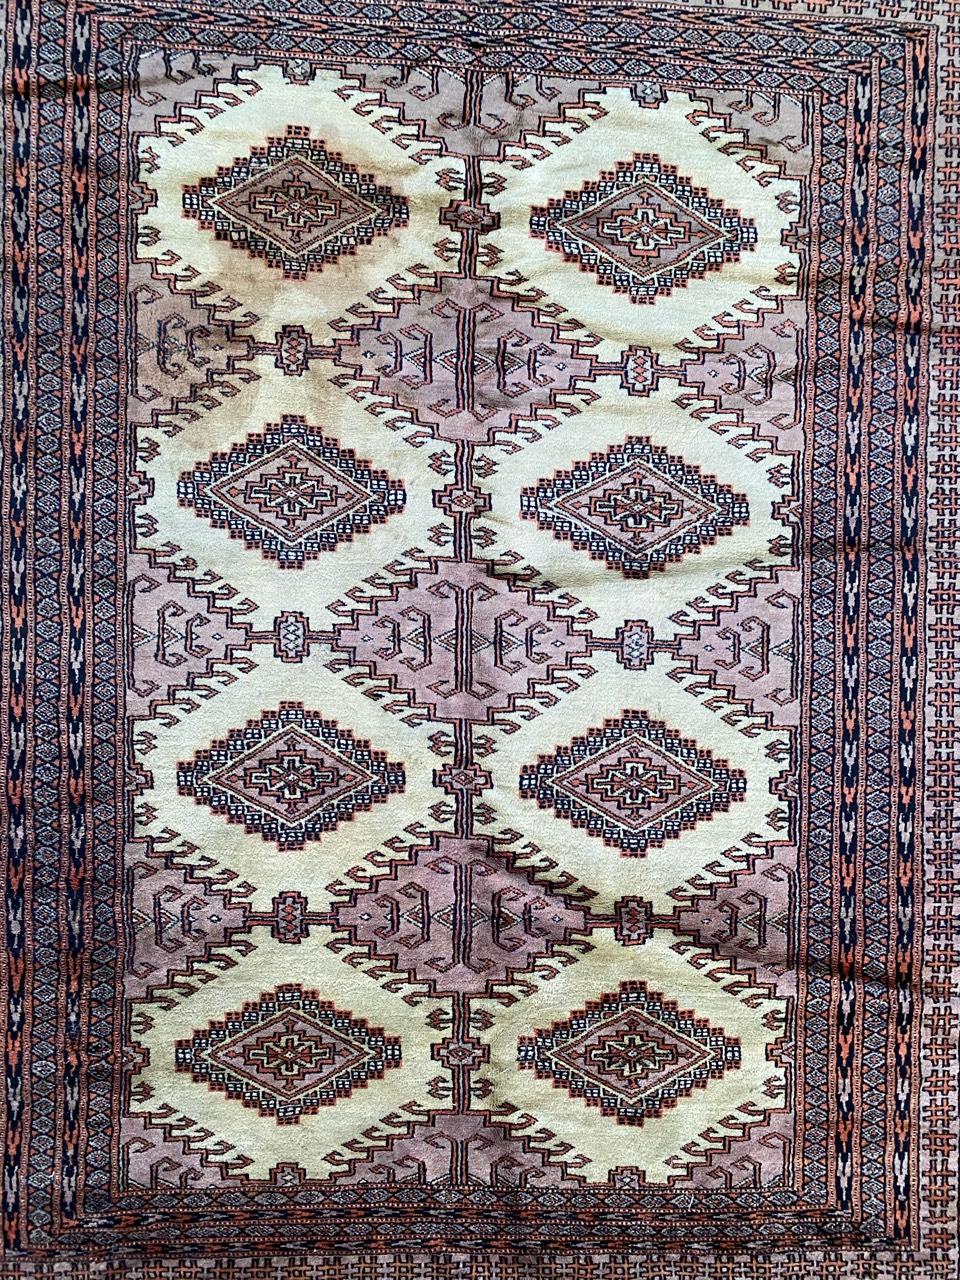 Schöner pakistanischer Teppich aus der Mitte des Jahrhunderts mit geometrischem turkmenischem Muster und schönen Farben in Rosa, Lila, Gelb und Schwarz, vollständig und fein handgeknüpft mit Wollsamt auf Baumwollgrund.